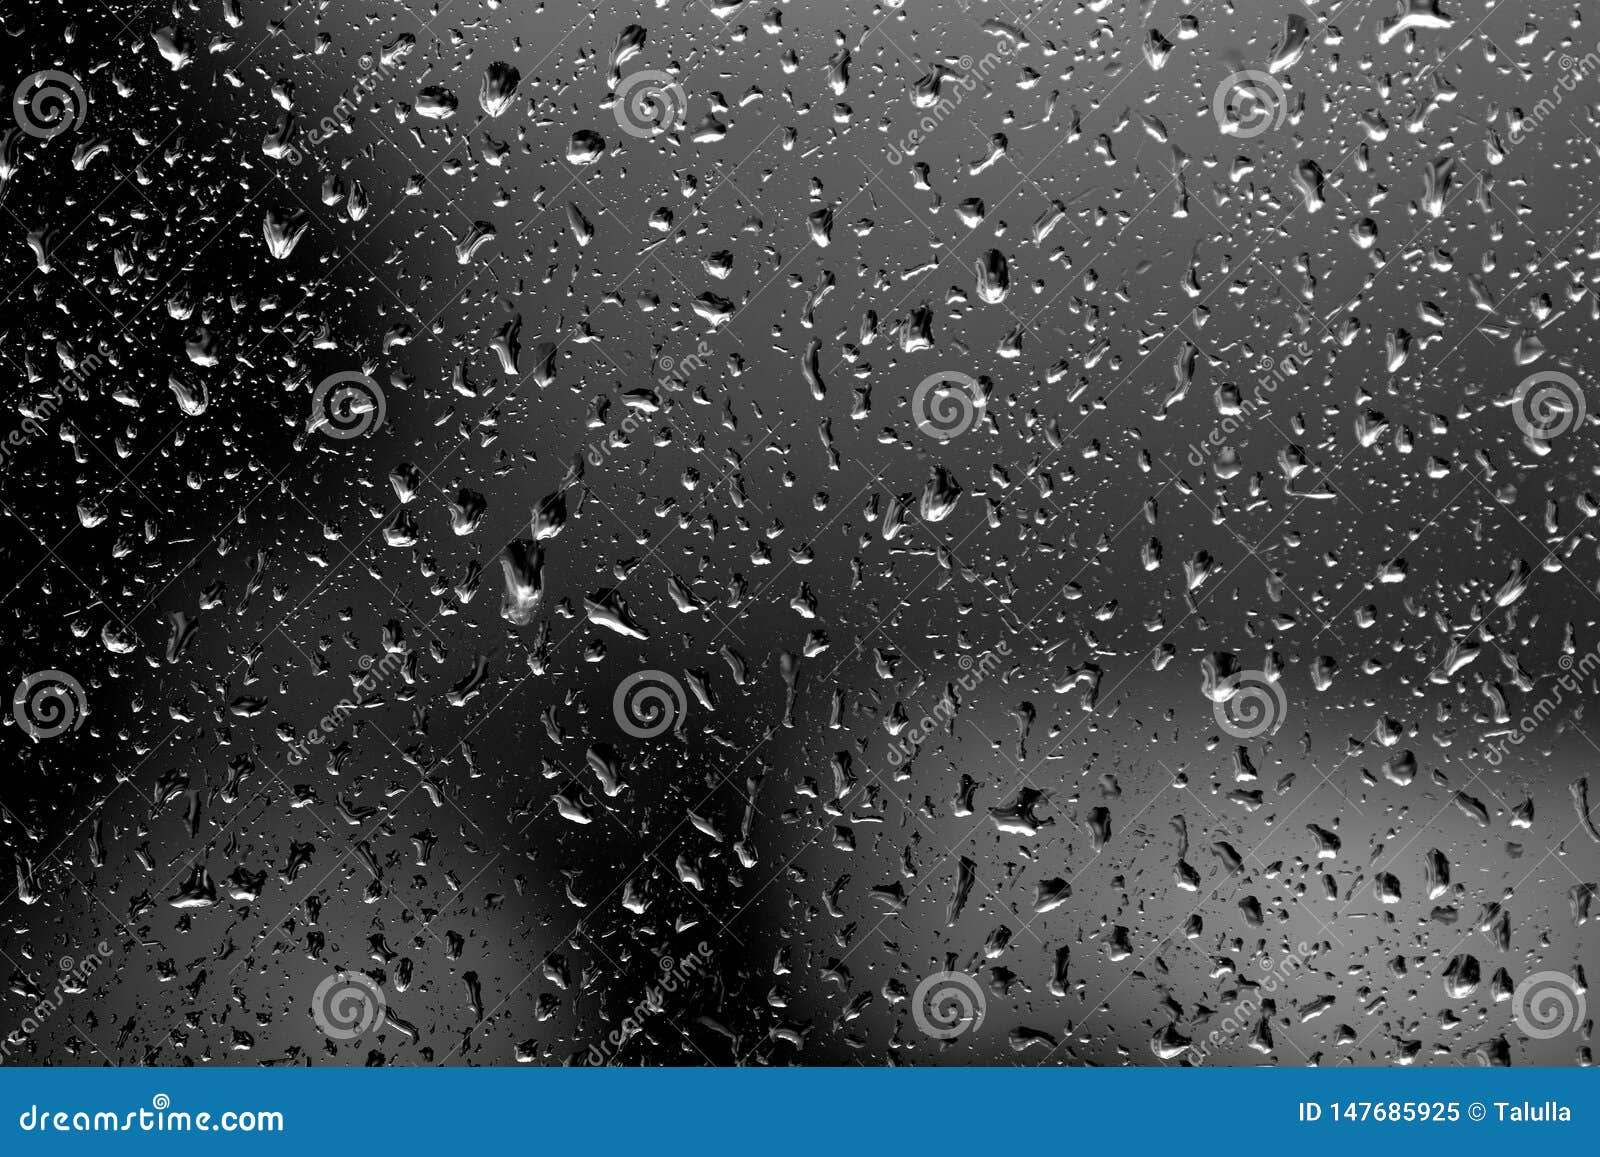 Gocce Di Pioggia Su Vetro In Tempo Piovoso Sfondo Naturale In Bianco E Nero Immagine Stock Immagine Di Ambiente Estratto 147685925